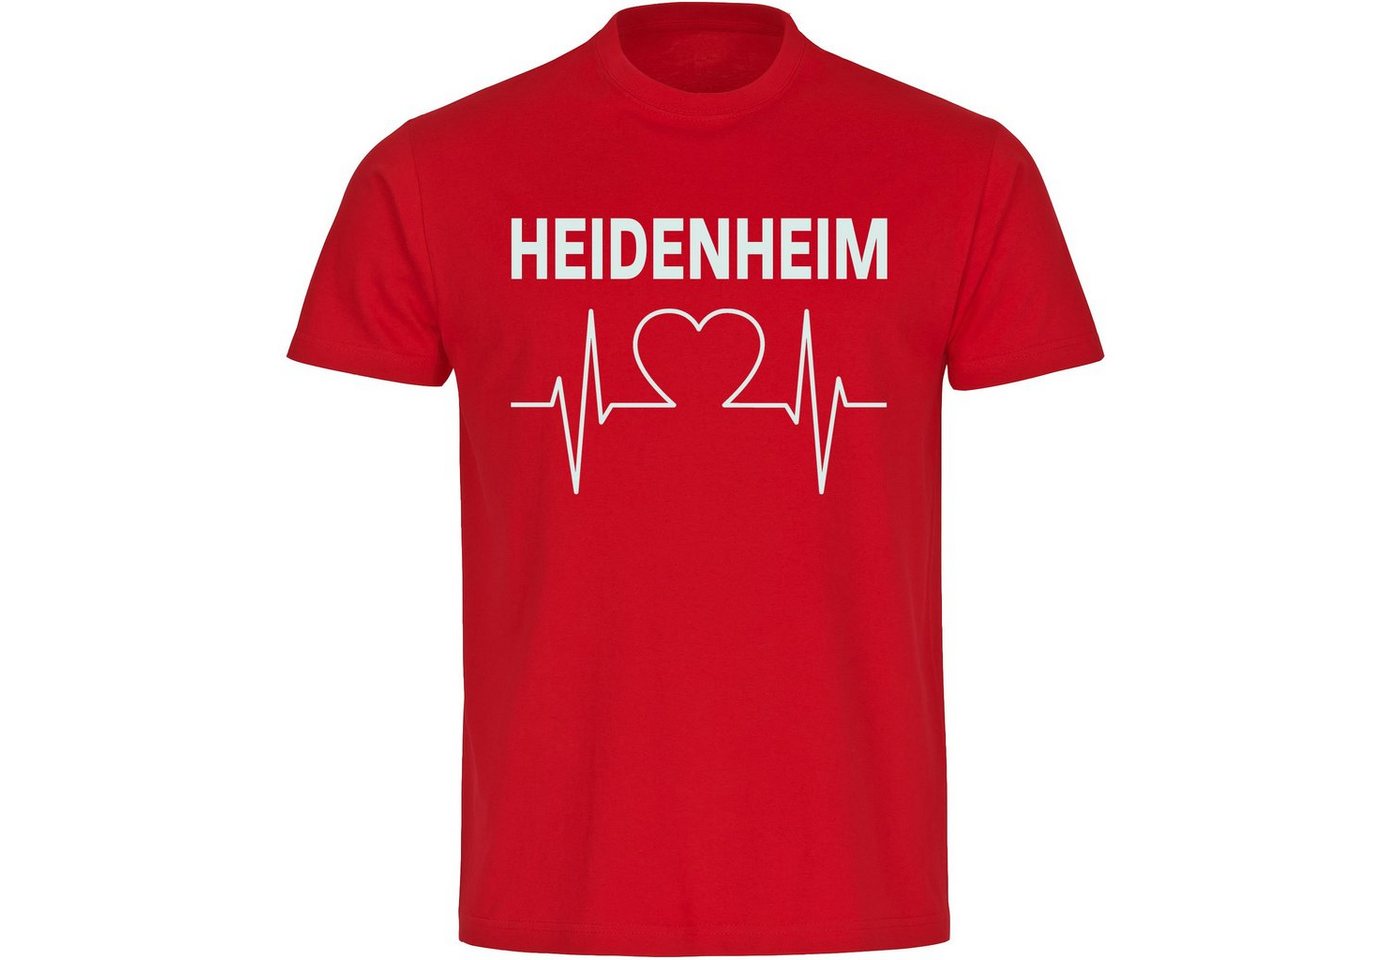 multifanshop T-Shirt Herren Heidenheim - Herzschlag - Männer von multifanshop